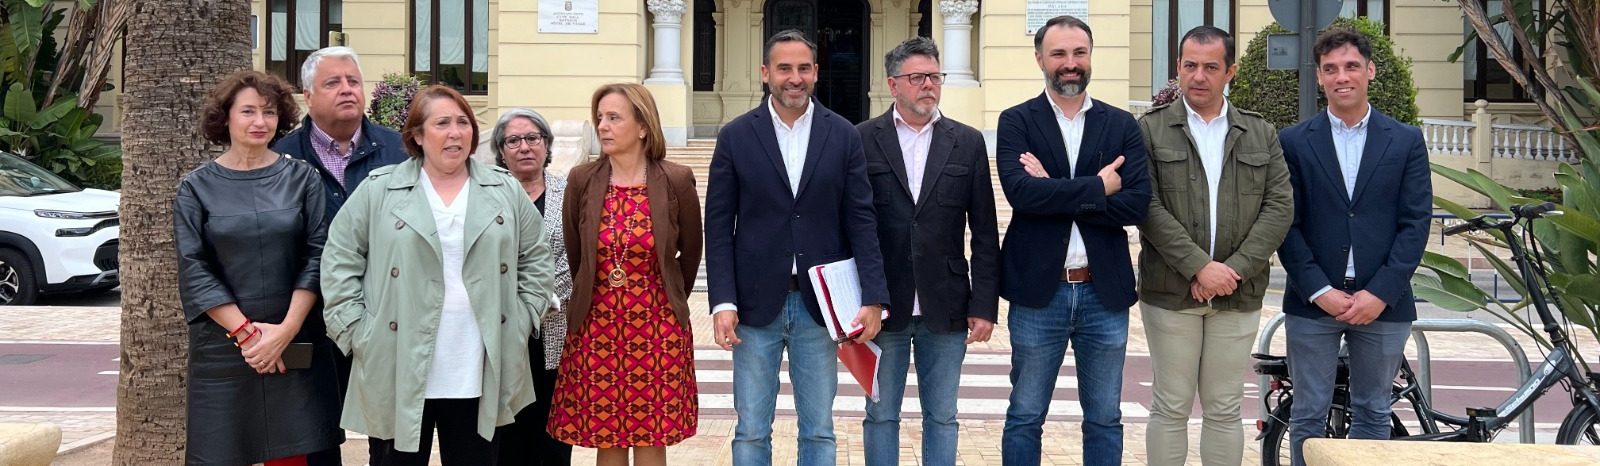 El PSOE denuncia el amaño de contratos públicos en SMASSA